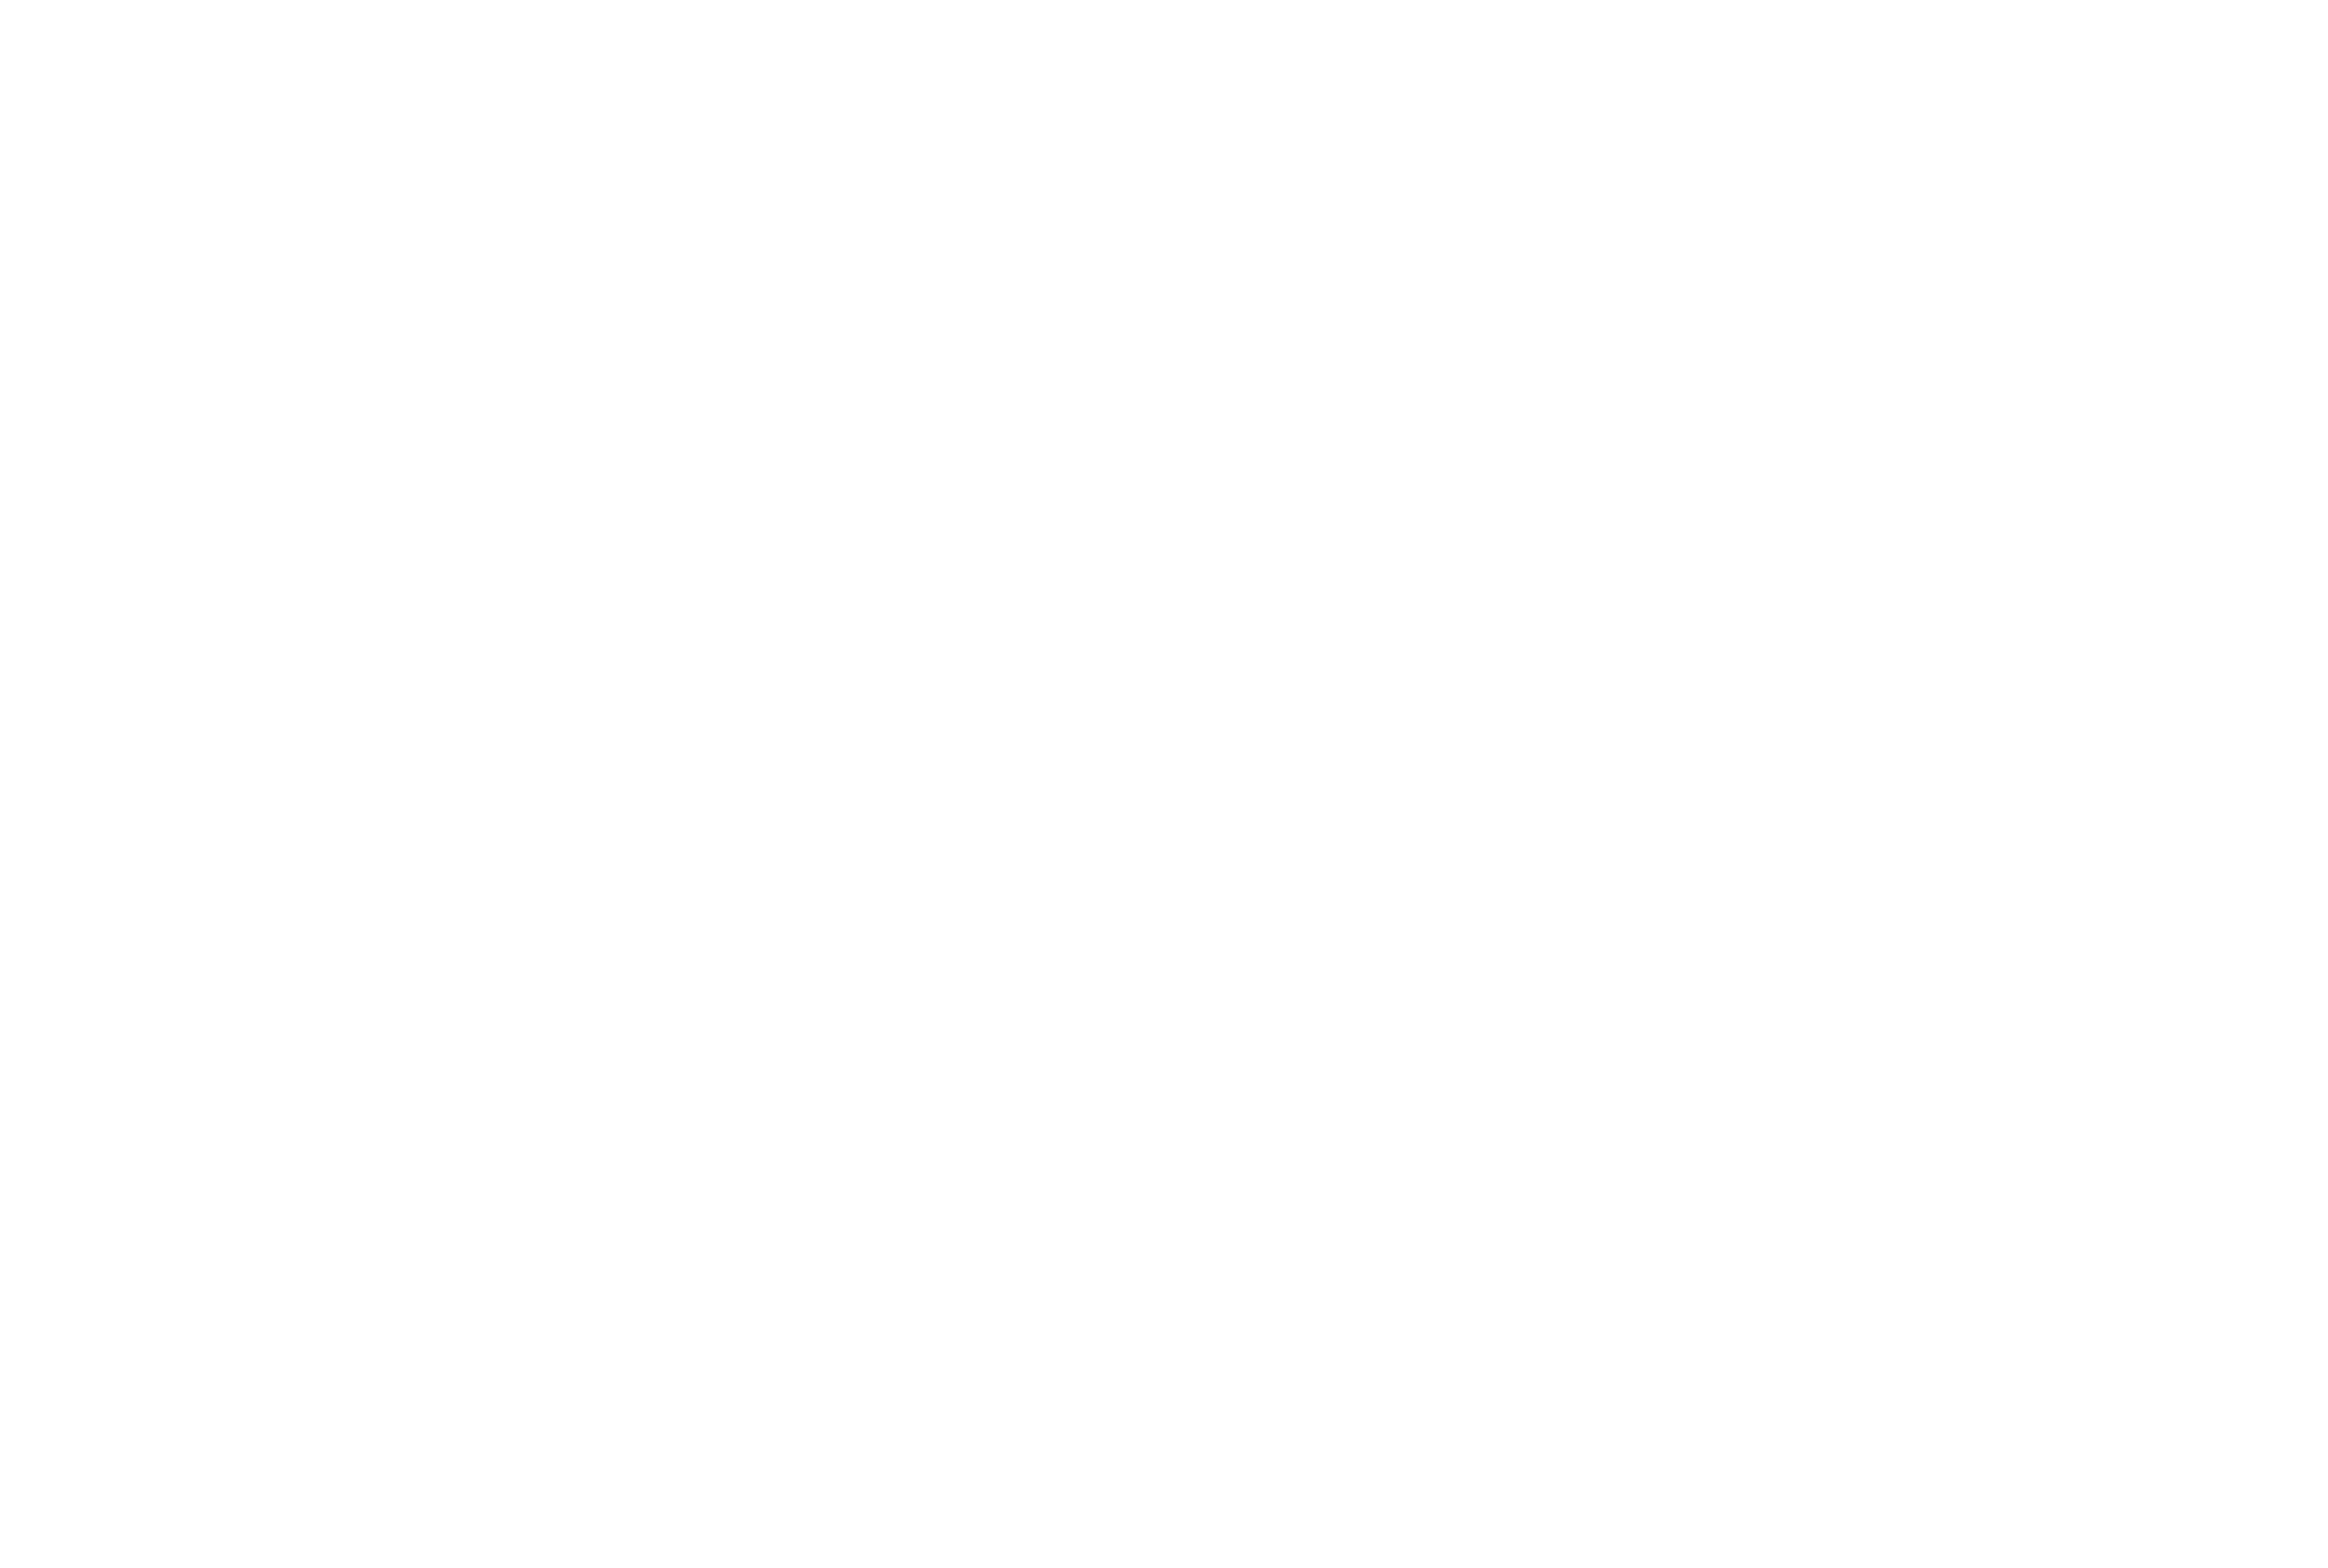 The Space Shop – Plant City